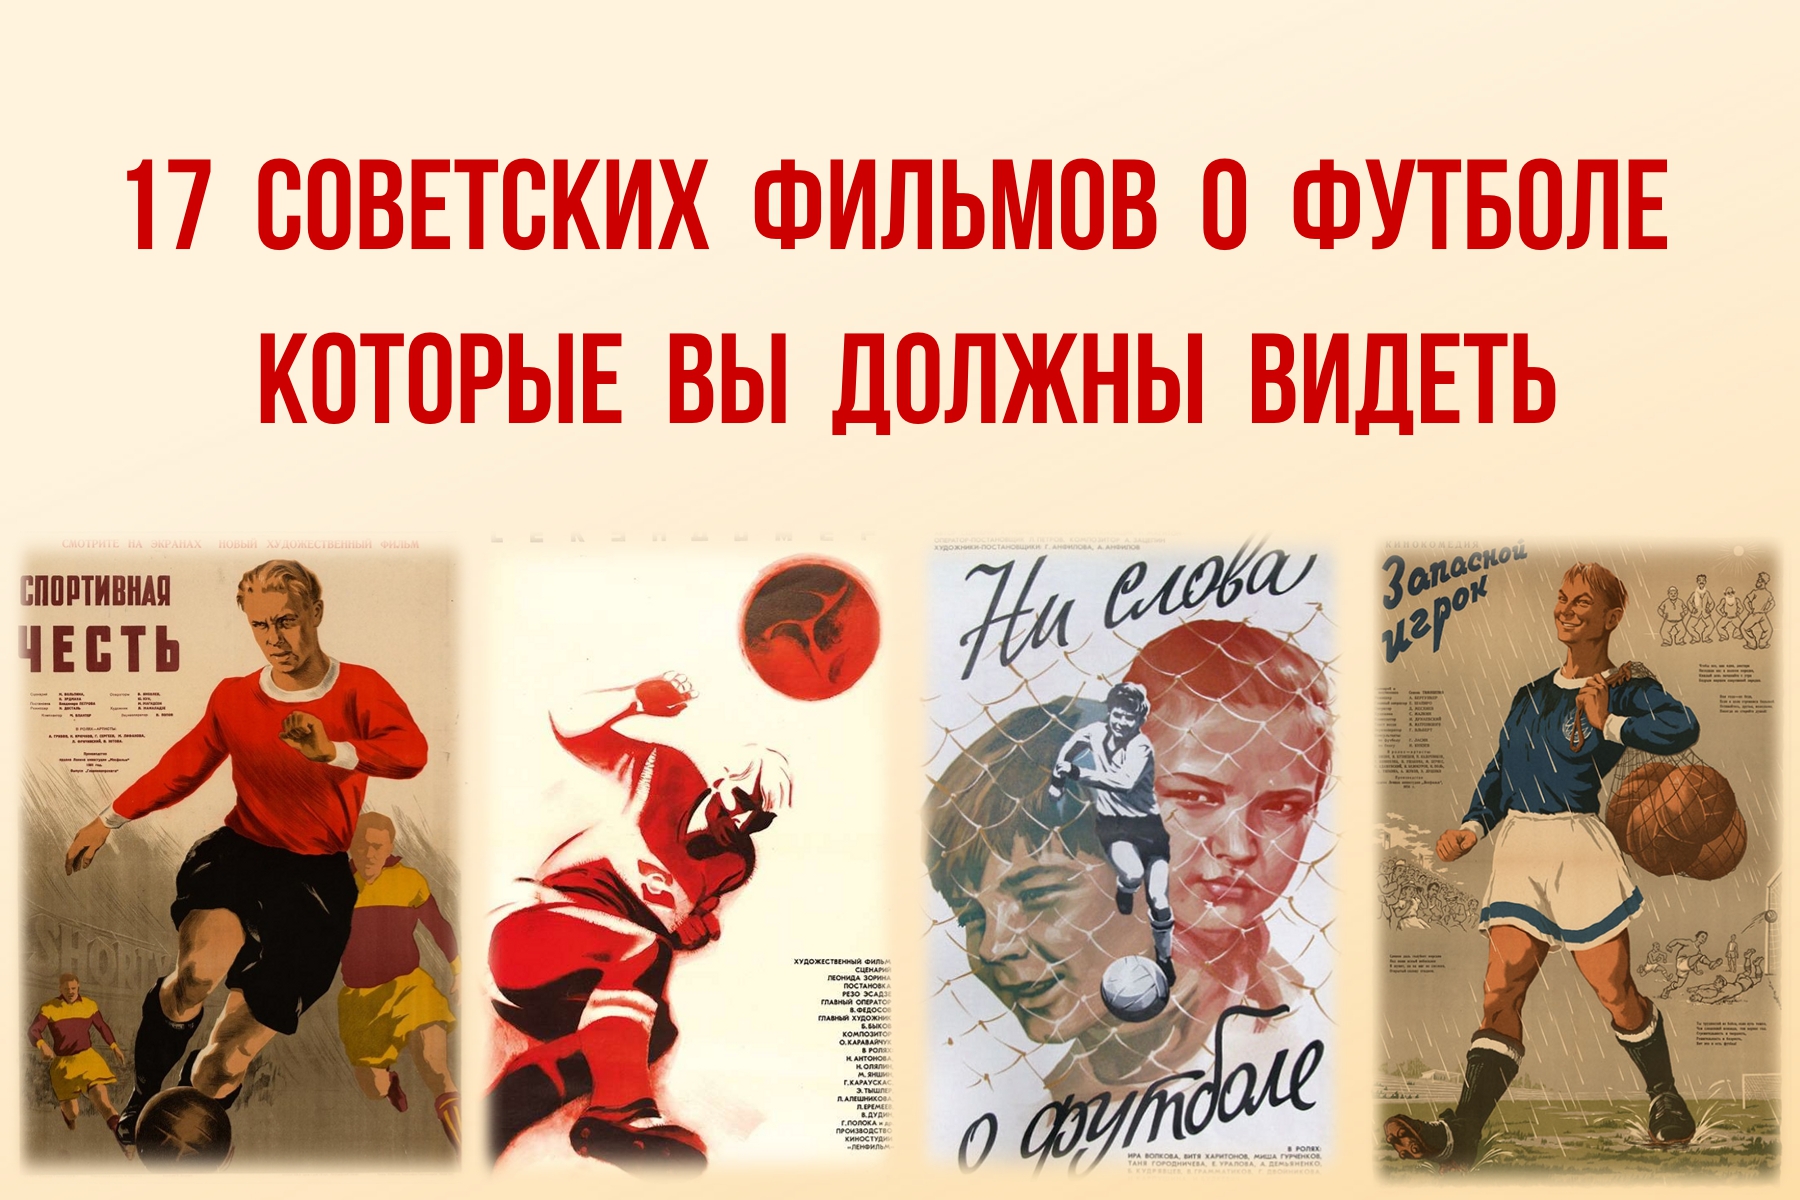 Вот 17 советских фильмов о футболе (плюс короткие рецензии). Есть даже про договорняки с Гафтом в главной роли